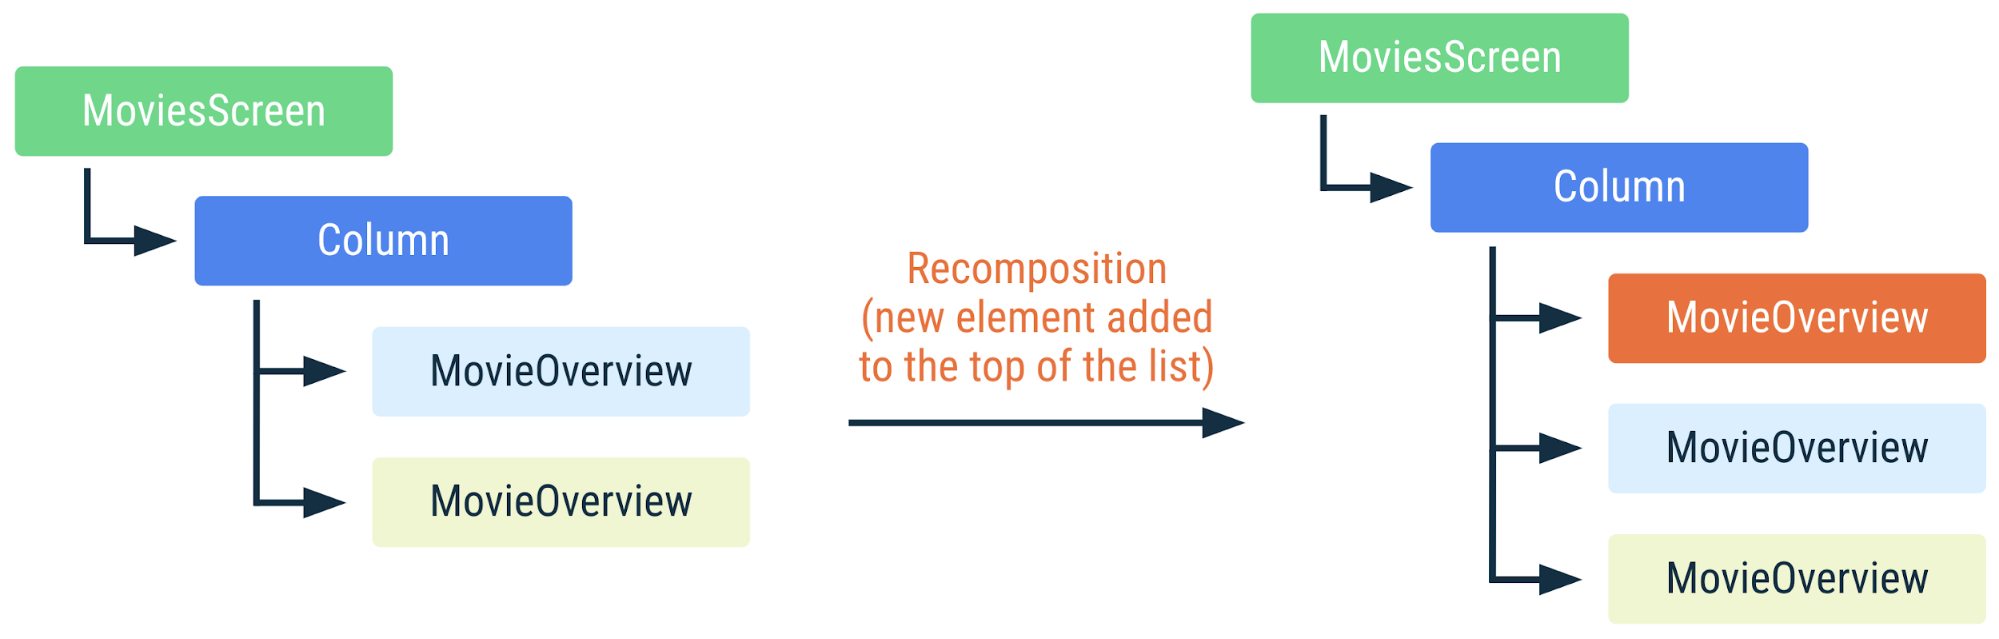 نموداری که نشان می دهد اگر یک عنصر جدید به بالای لیست اضافه شود، چگونه کد قبلی دوباره ترکیب می شود. از آنجایی که آیتم های لیست با کلیدها مشخص می شوند، Compose می داند که آنها را دوباره ترکیب نکند، حتی اگر موقعیت آنها تغییر کرده باشد.